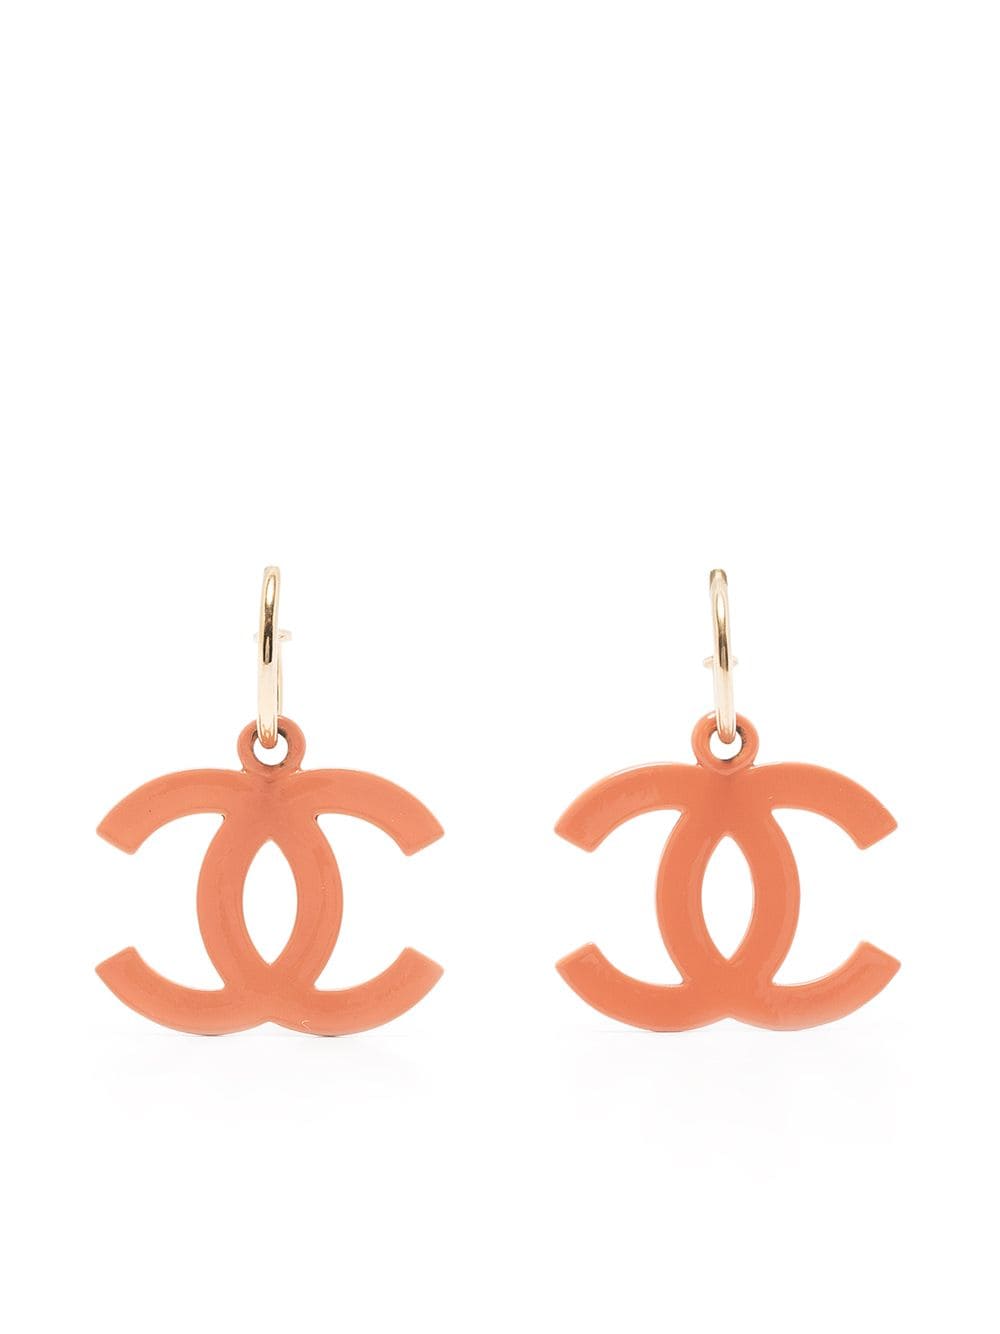 Chanel Earrings cc logo Orange